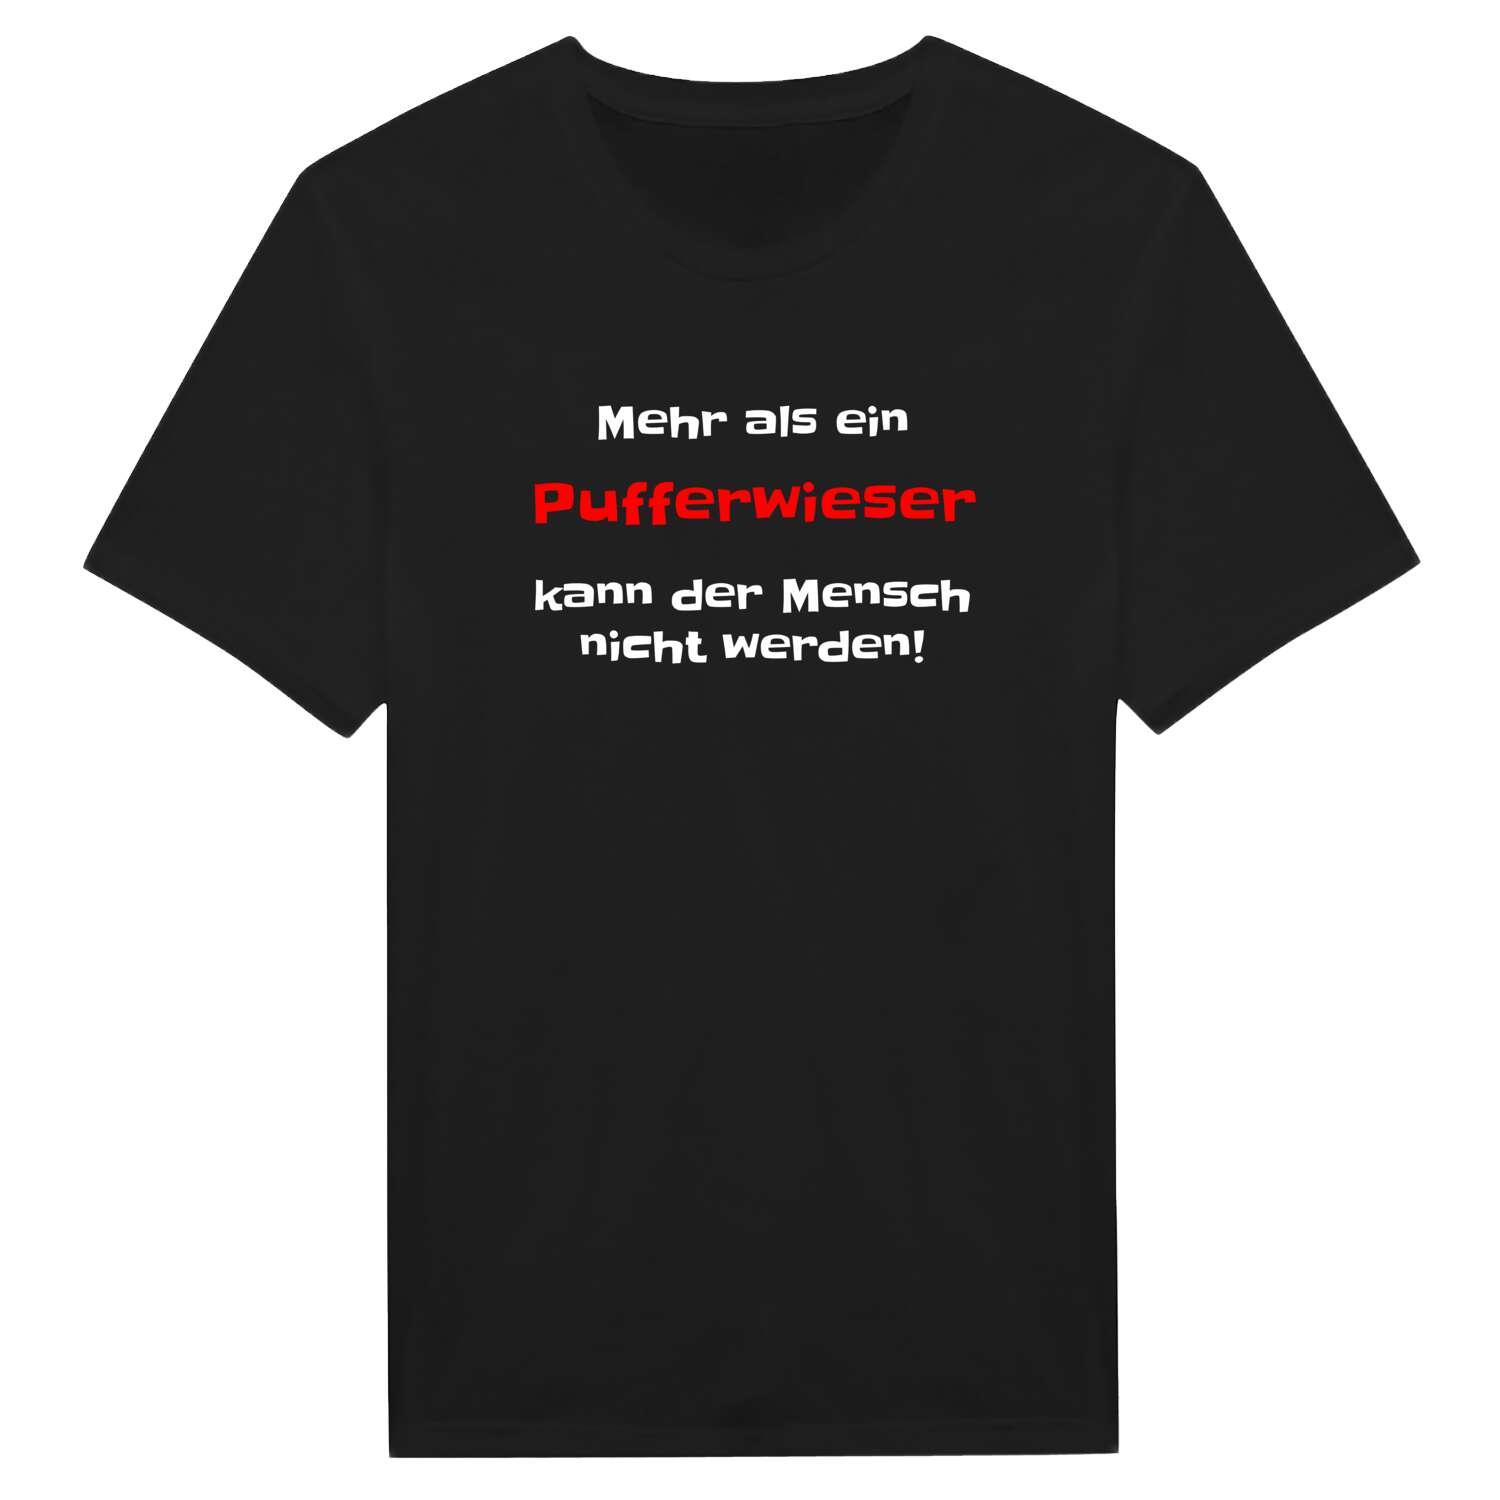 Pufferwies T-Shirt »Mehr als ein«